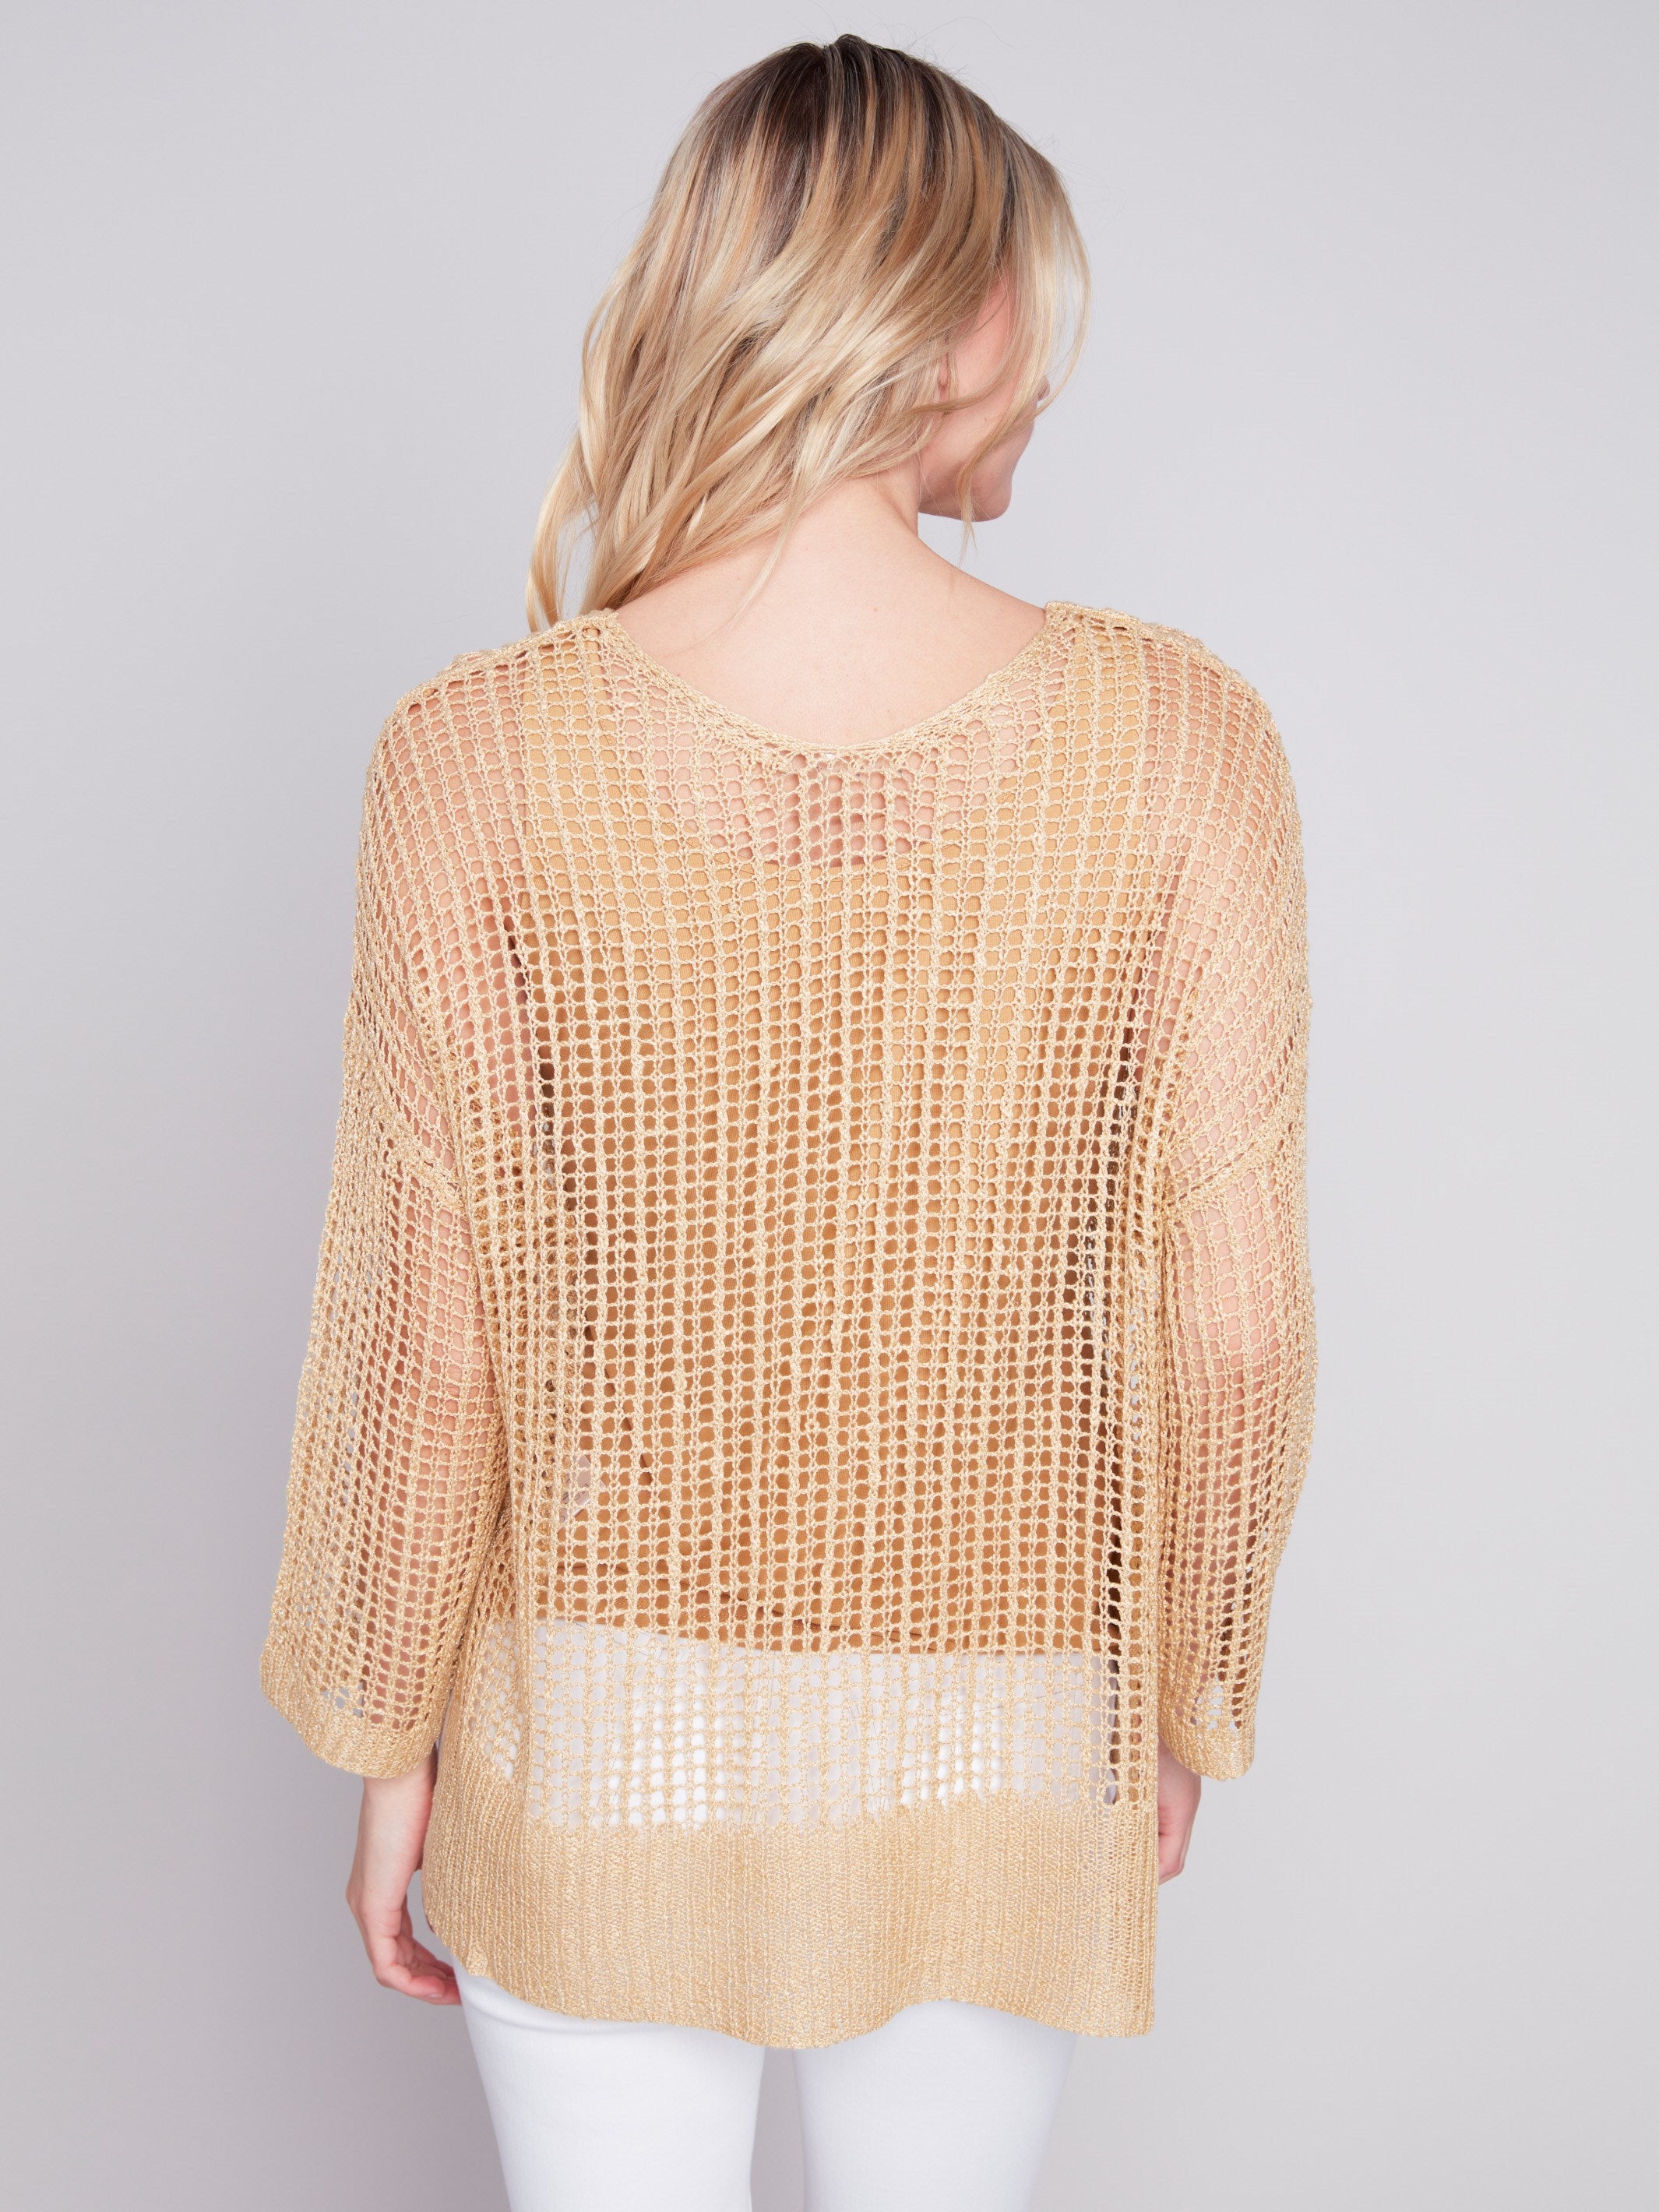 Charlie B Fishnet Crochet Sweater - Gold - Image 2